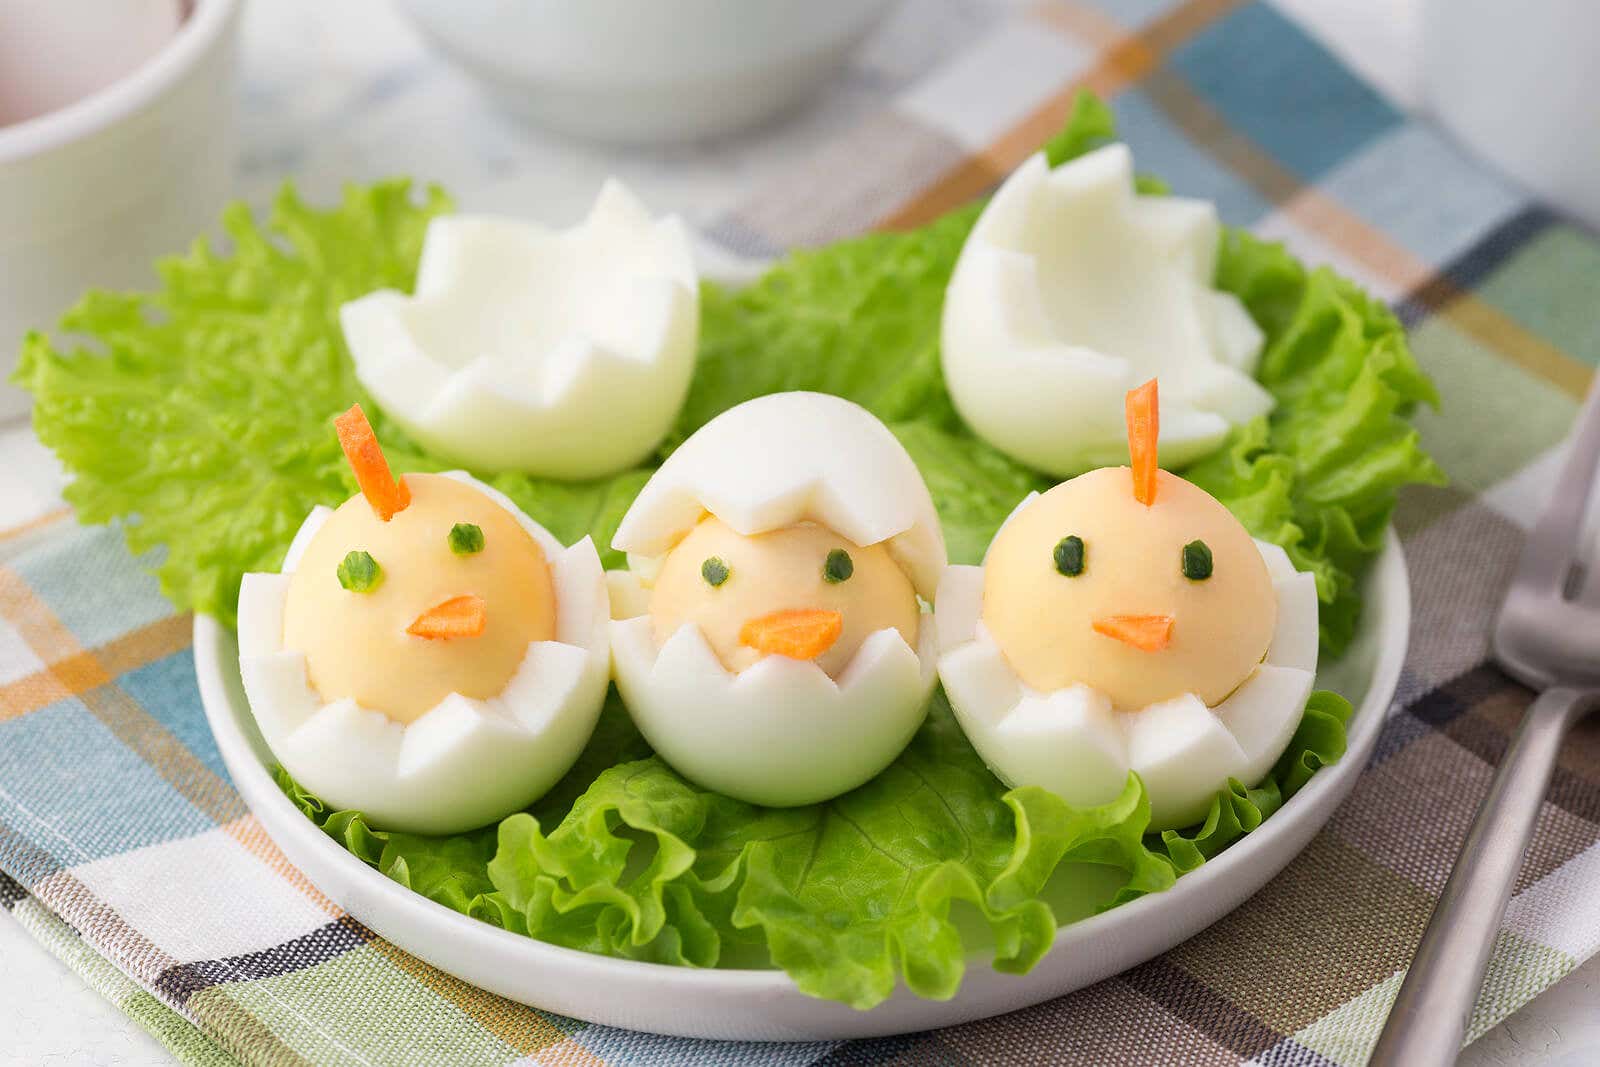 Huevos cocidos con forma de pollito.